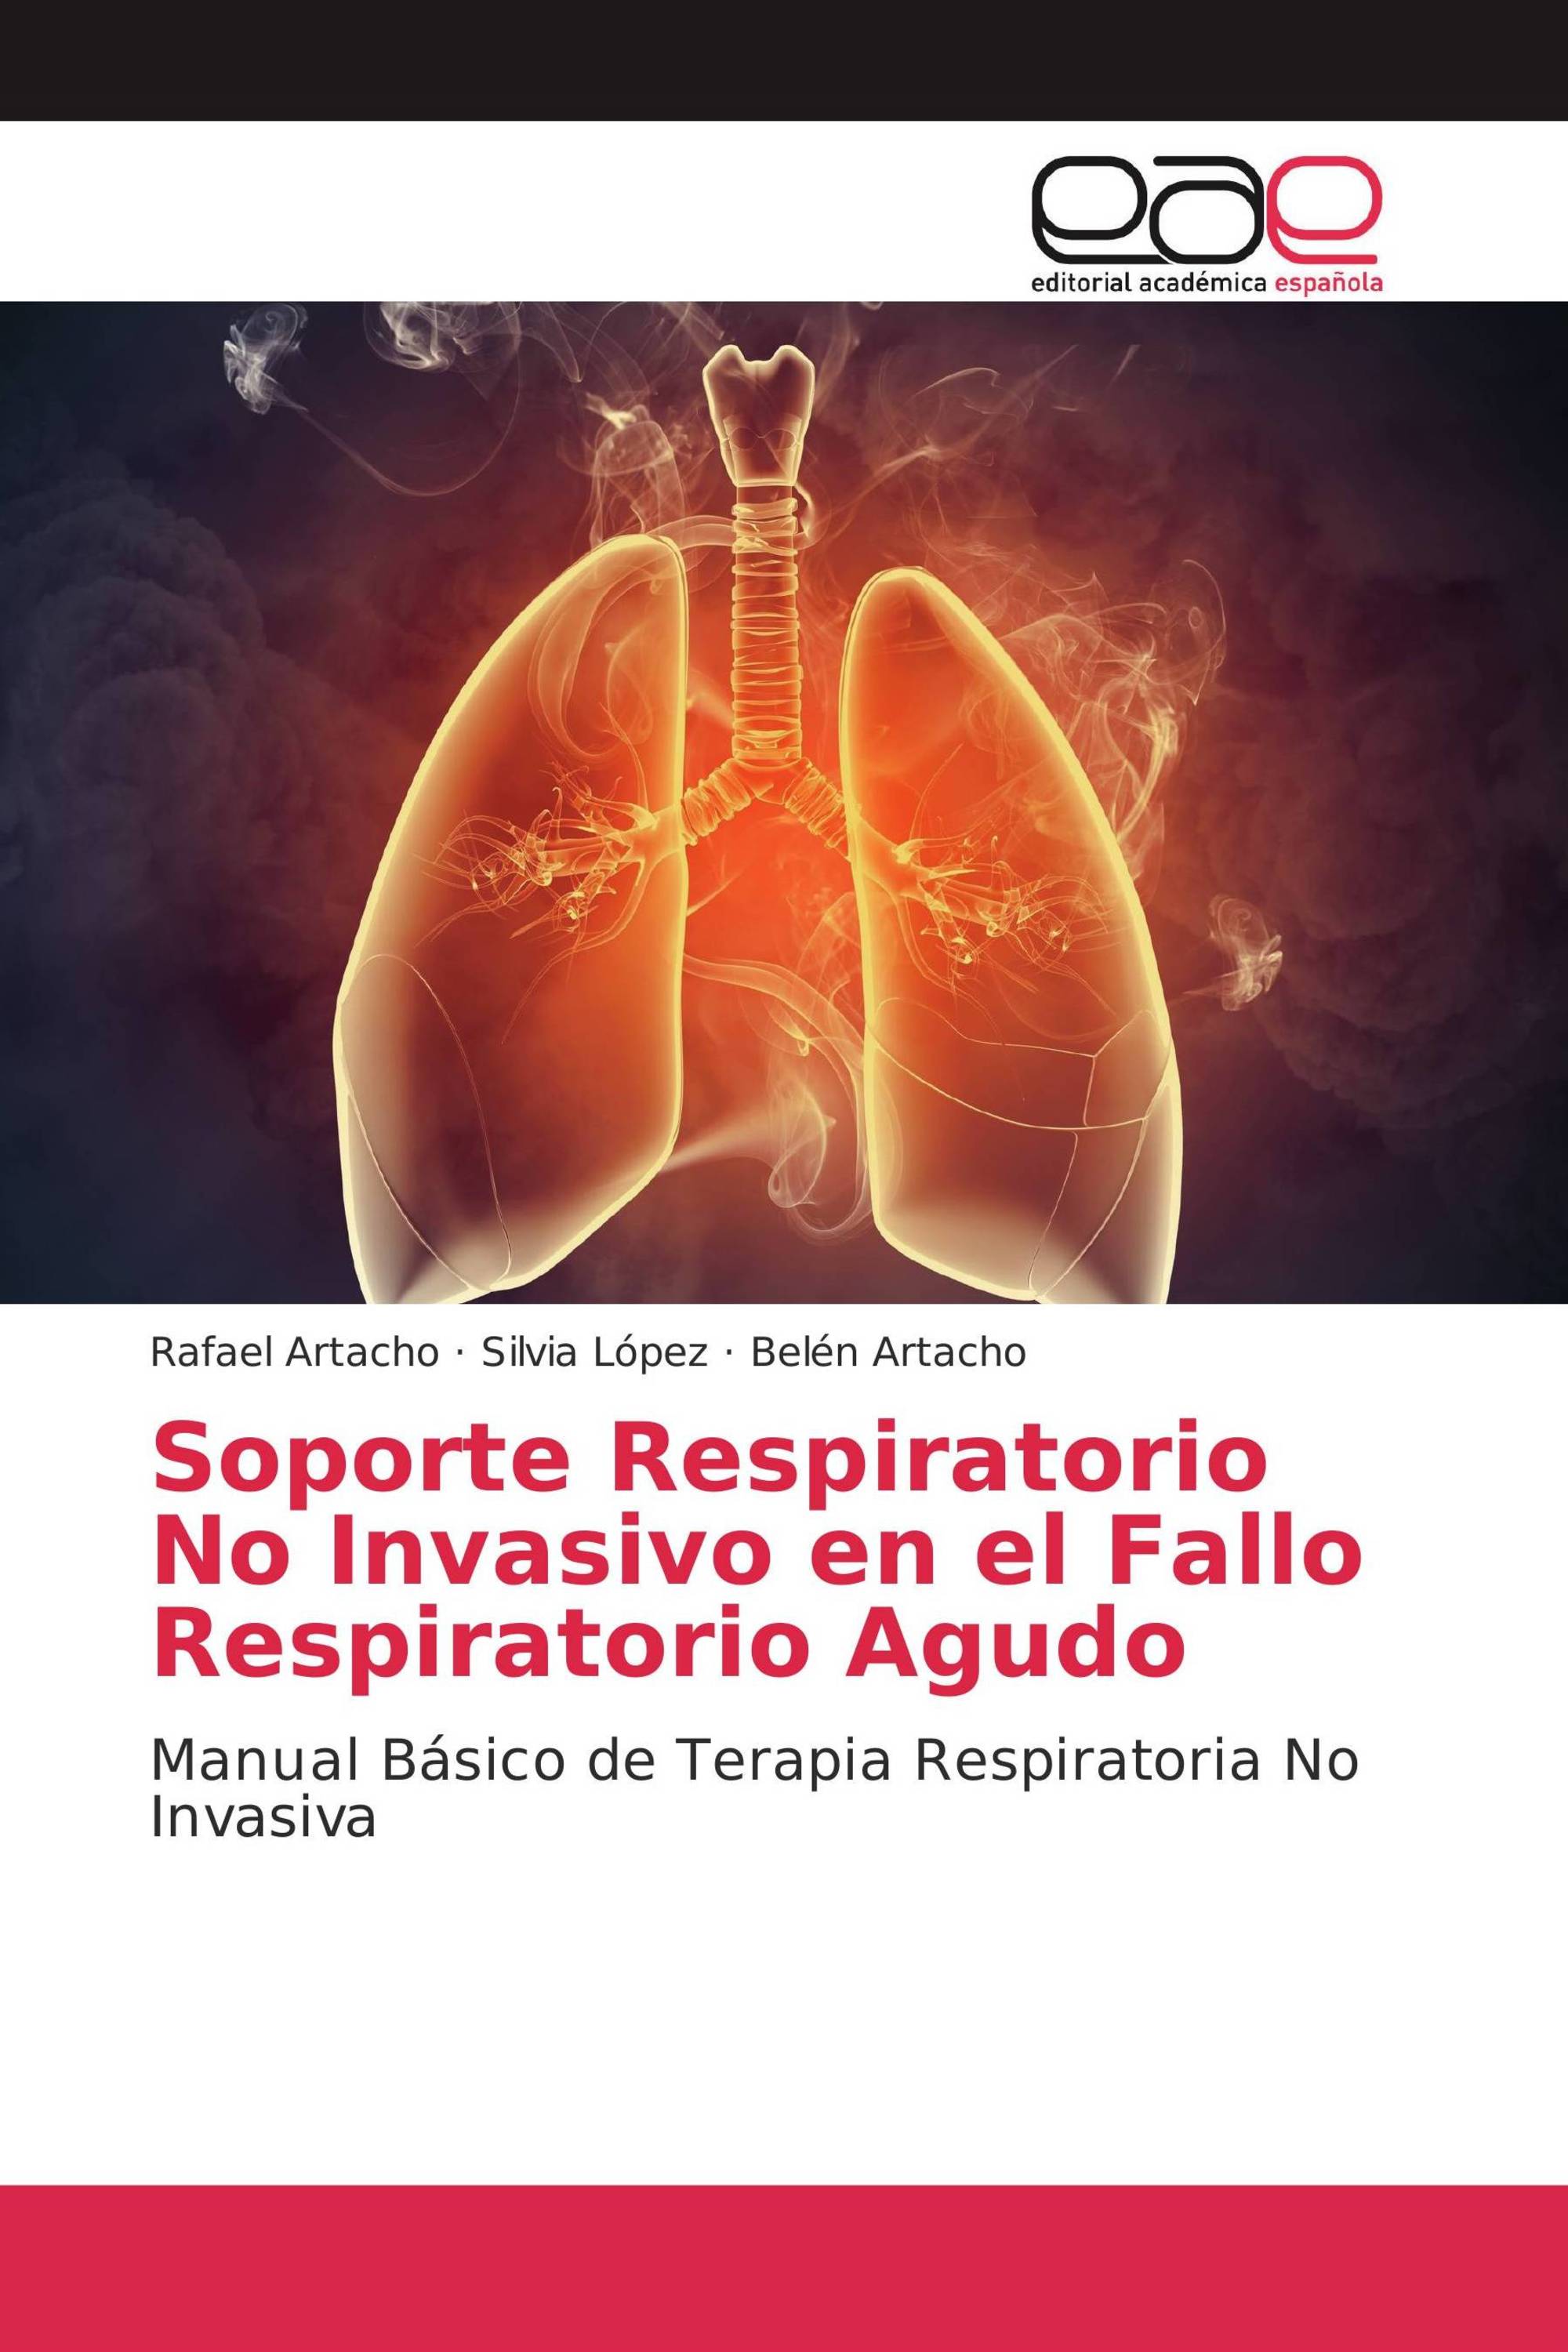 Soporte Respiratorio No Invasivo en el Fallo Respiratorio Agudo